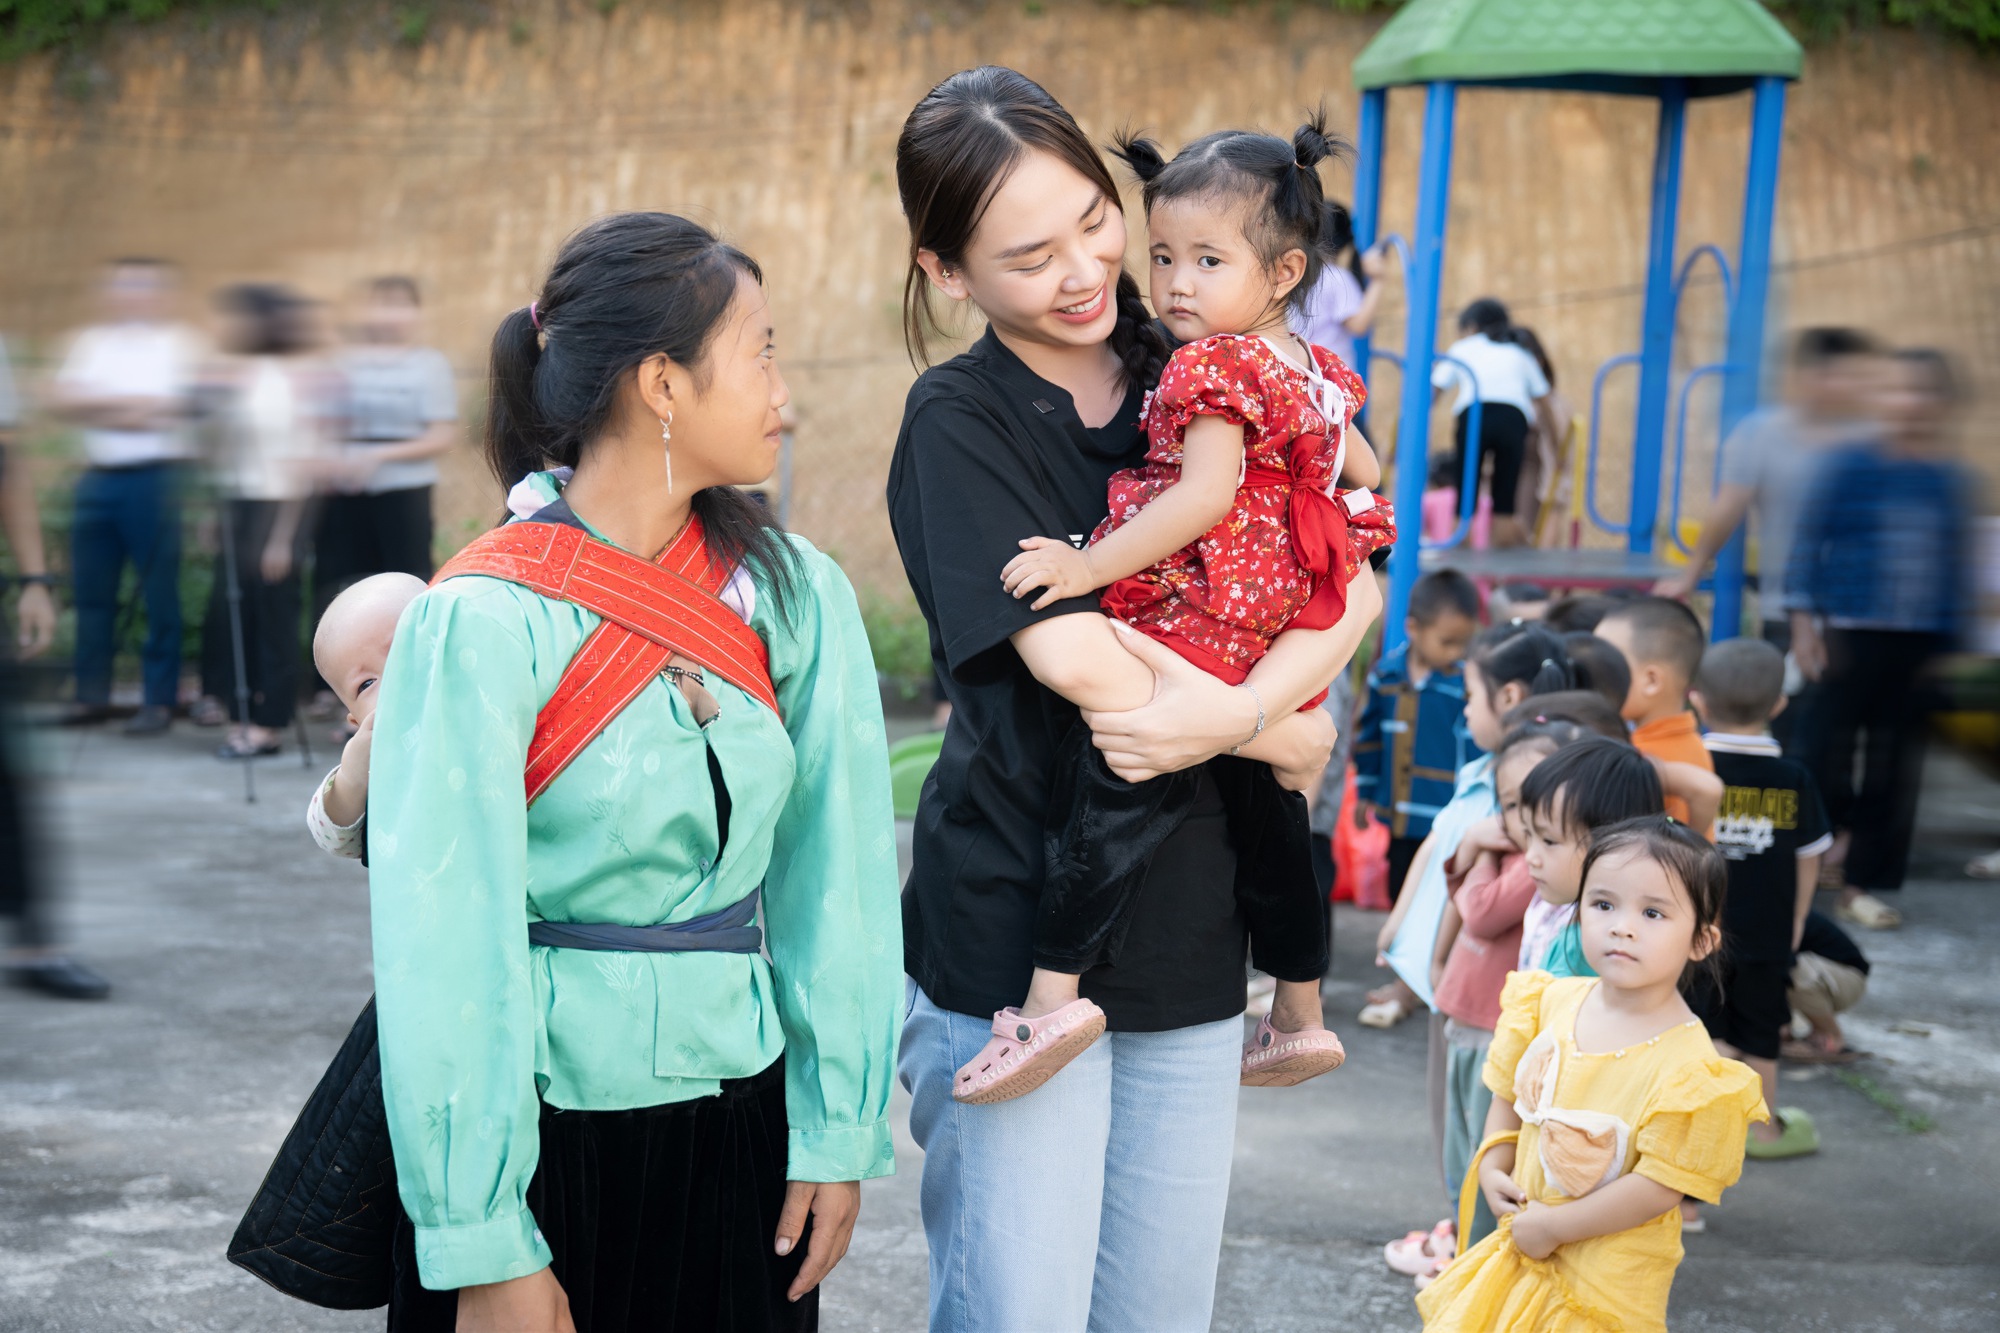 Hoa hậu Mai Phương đến thăm và tặng quà cho học sinh nghèo Bắc Kạn nhân dịp khai giảng - Ảnh 4.